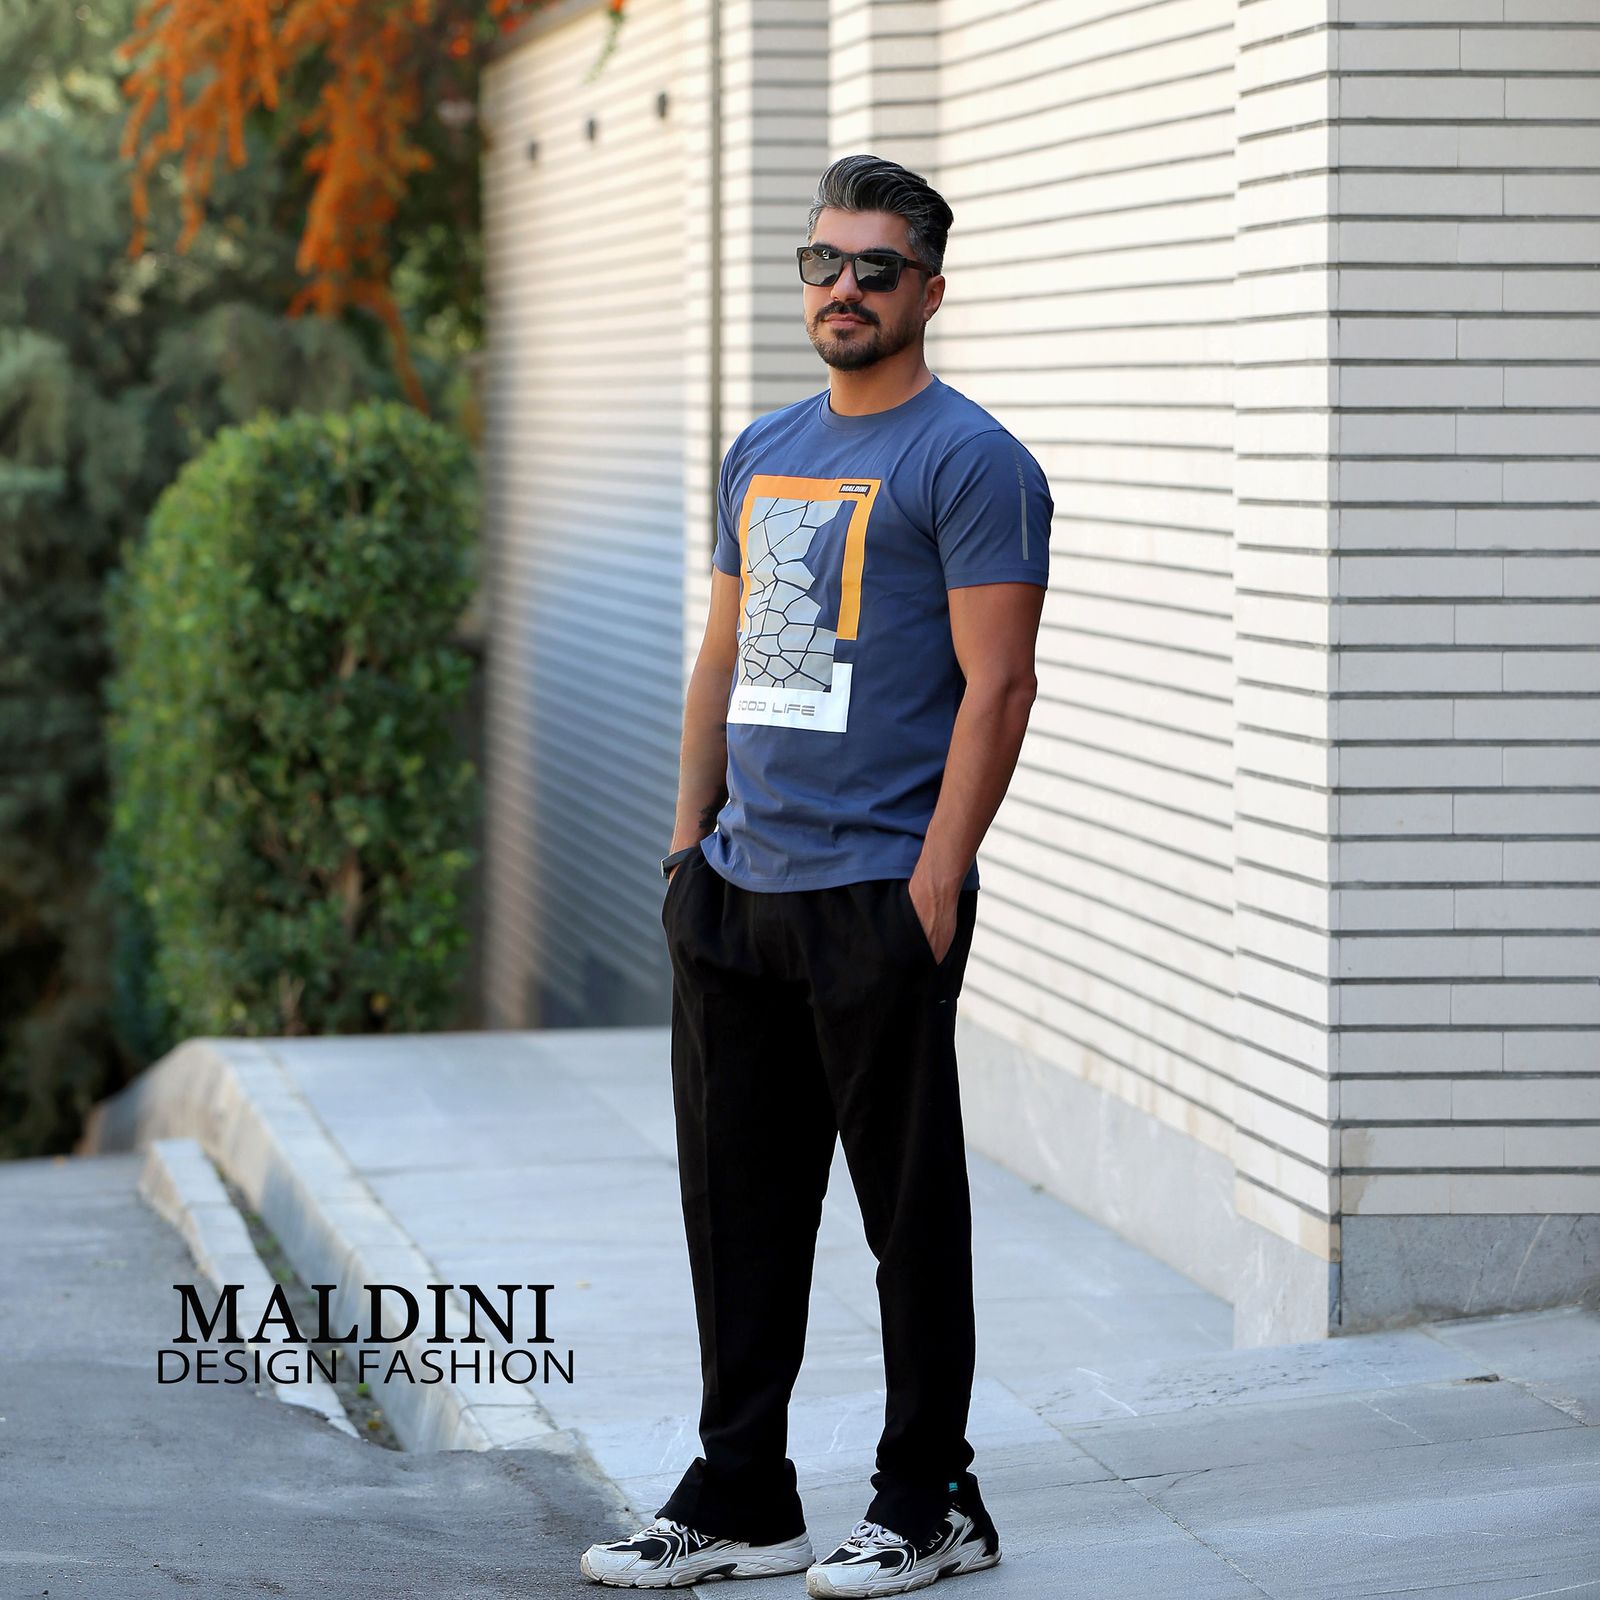 تی شرت آستین کوتاه مردانه مالدینی مدل T-147 -  - 8